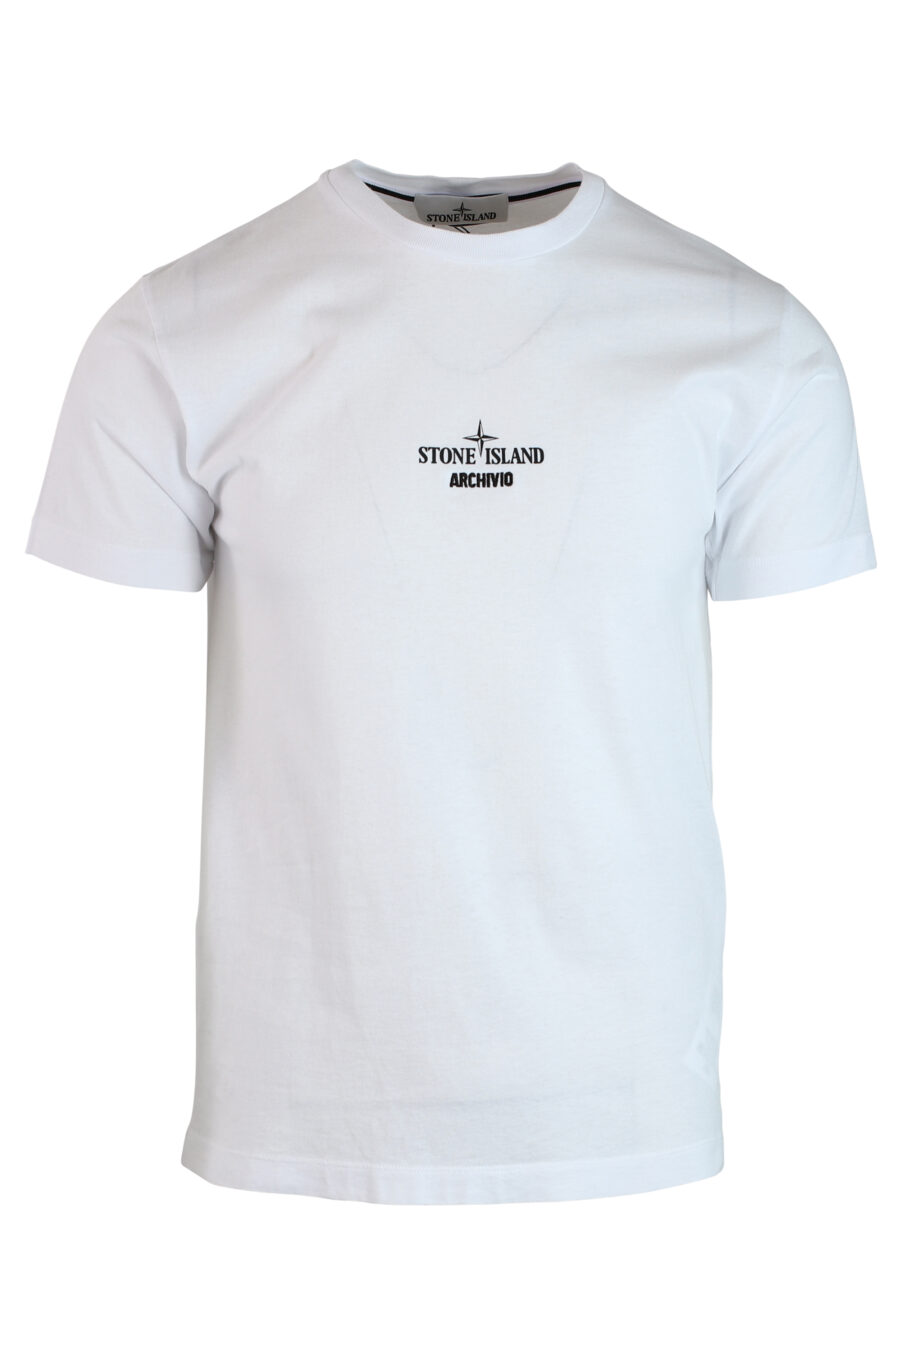 Camiseta blanca "archivio" - IMG 0254